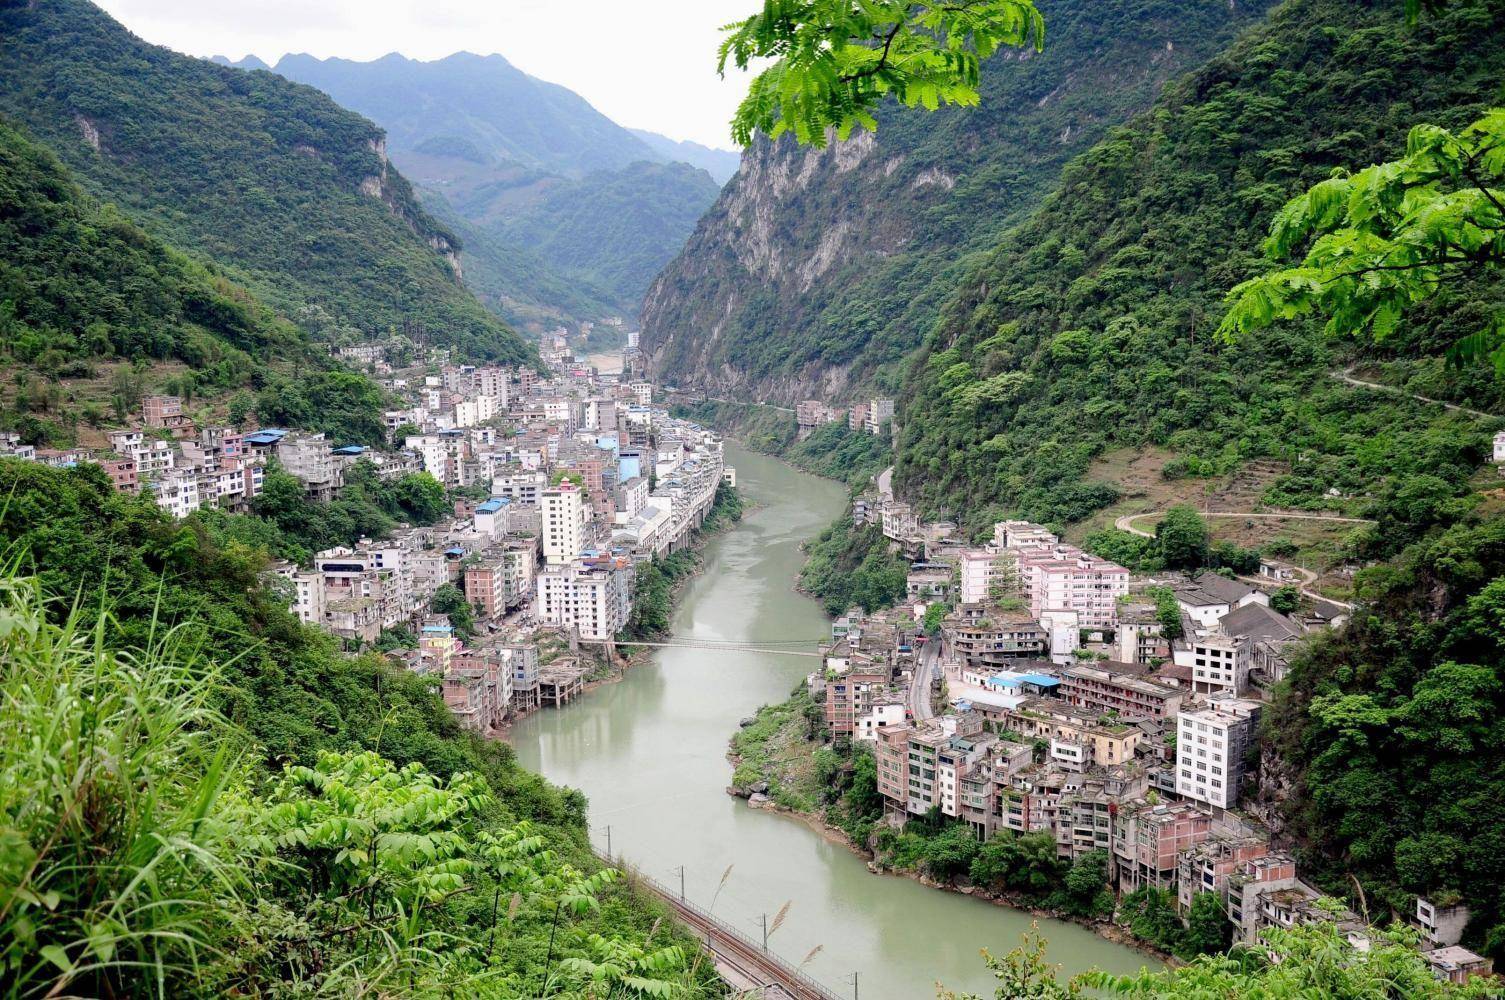 中国第一窄县城:依山傍水建在峡谷,最窄处不足30米,却